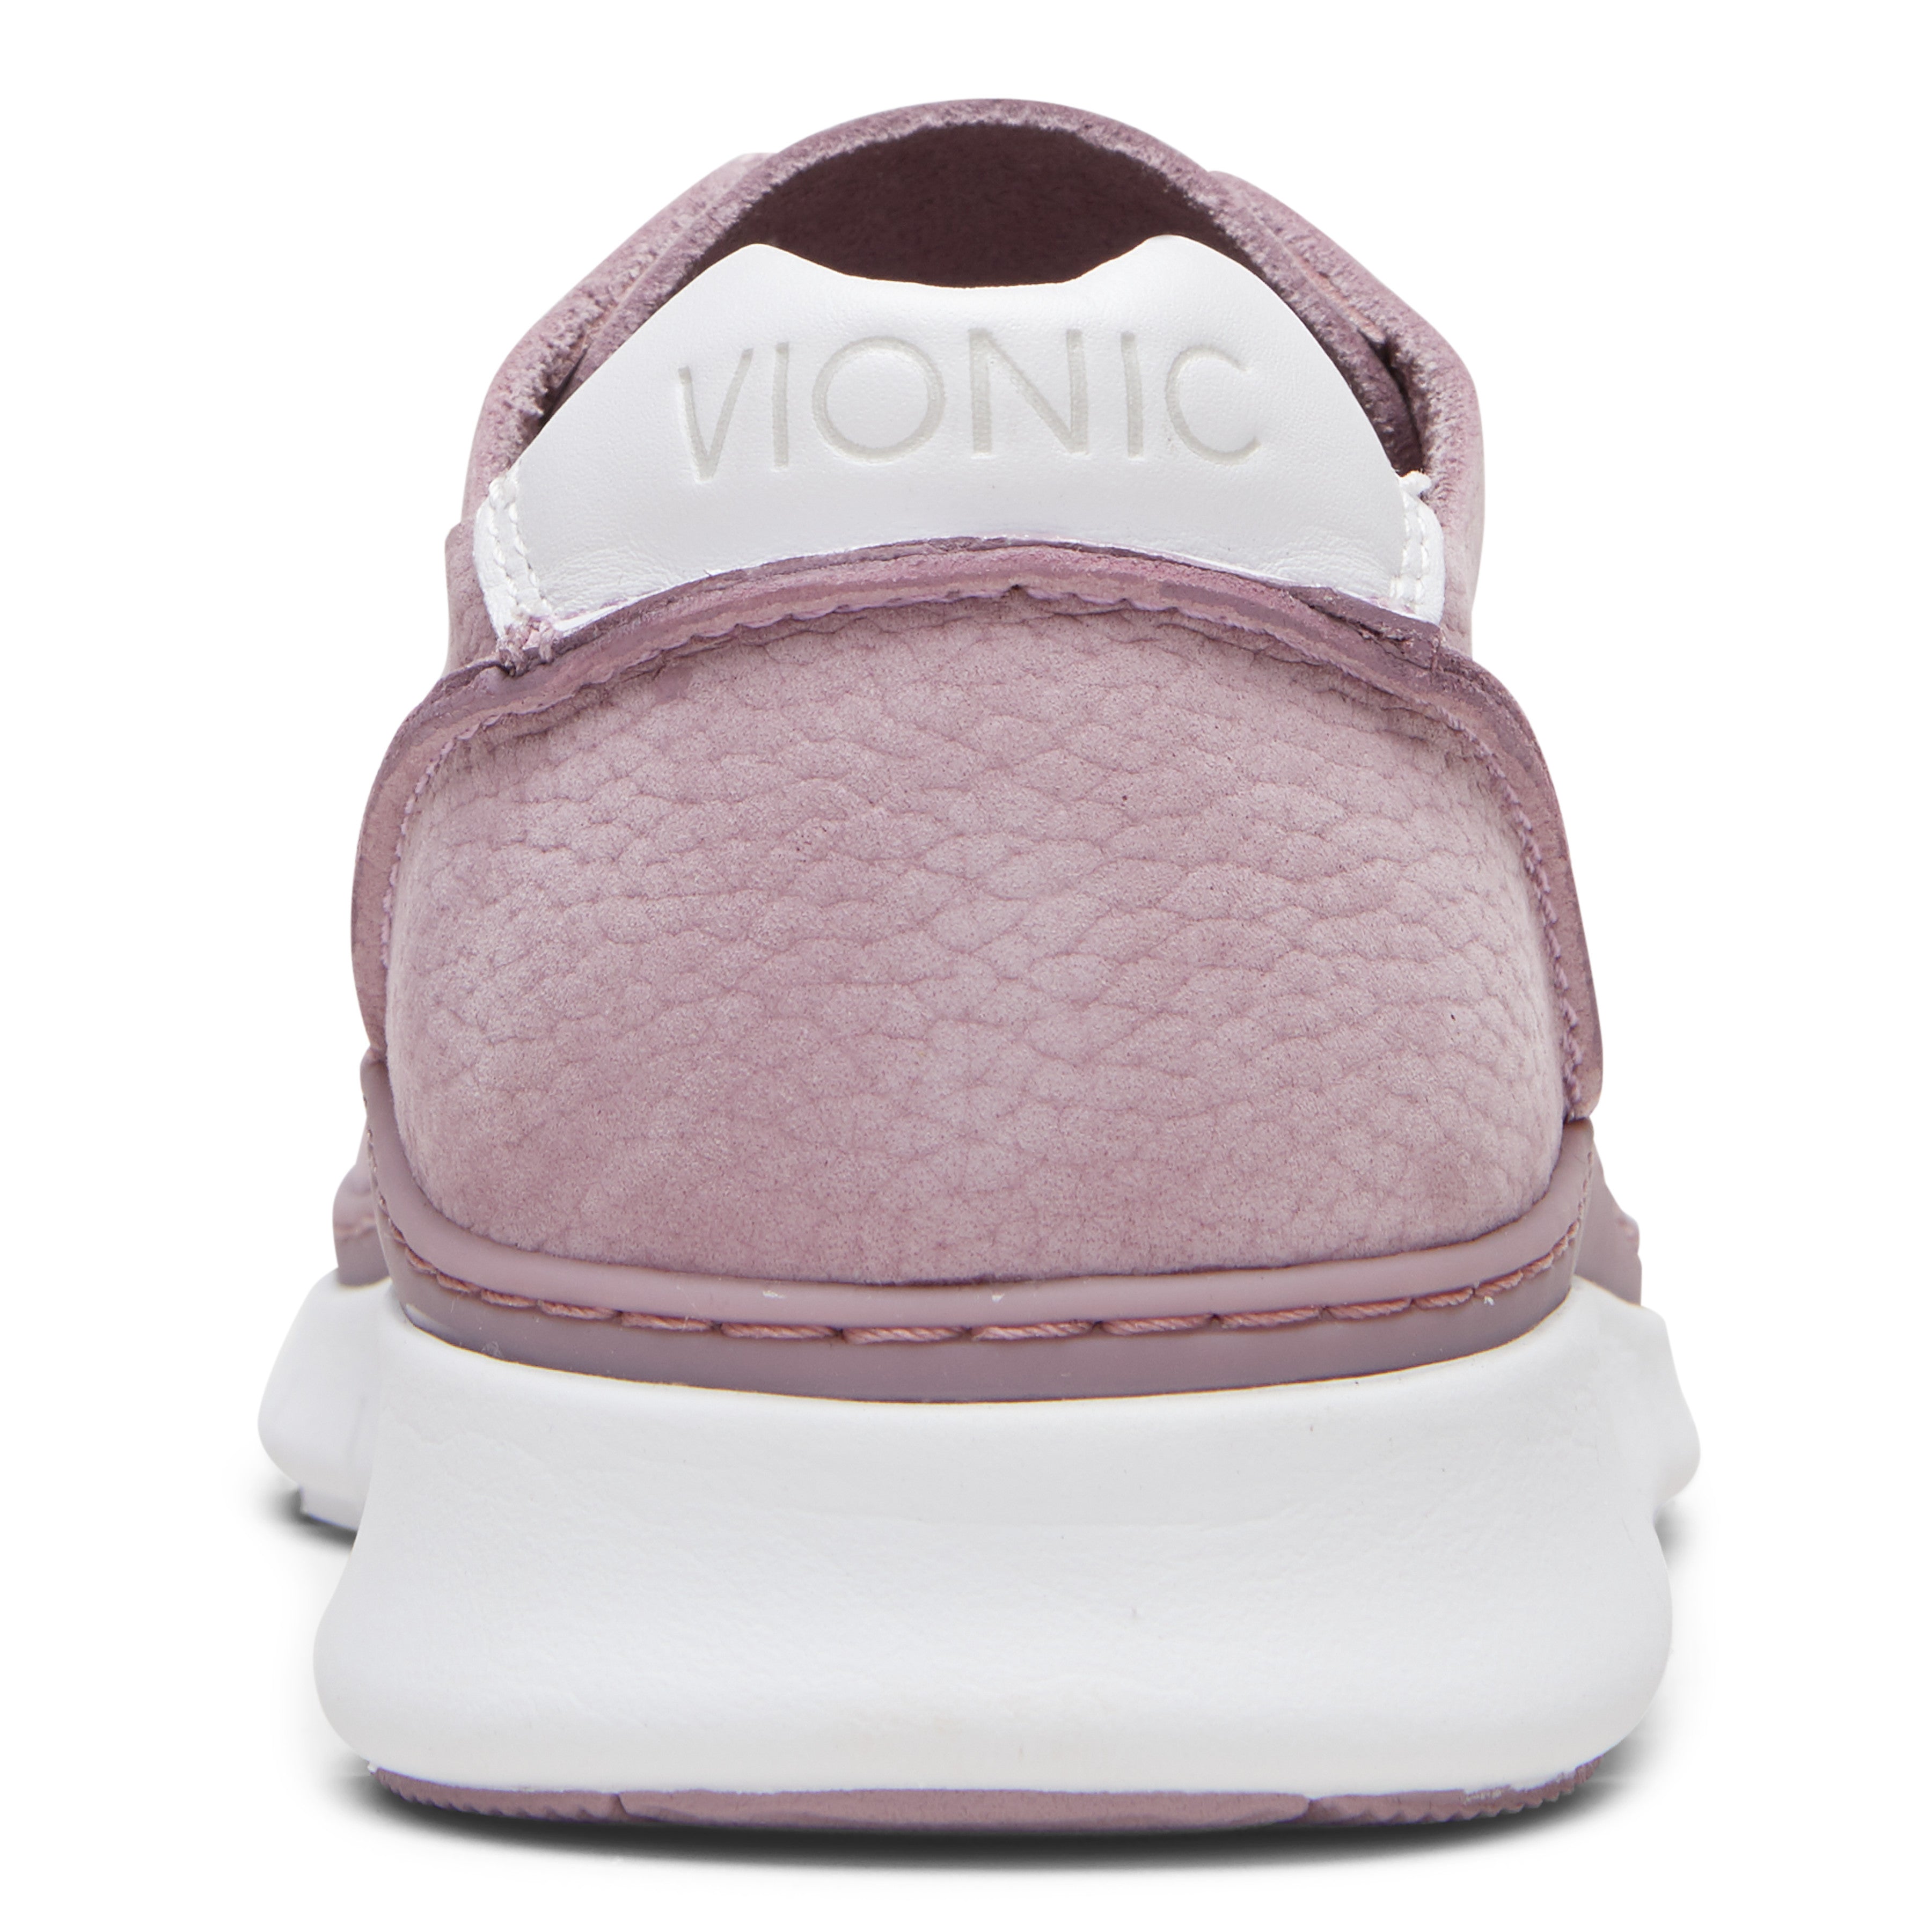 vionic joey sneakers